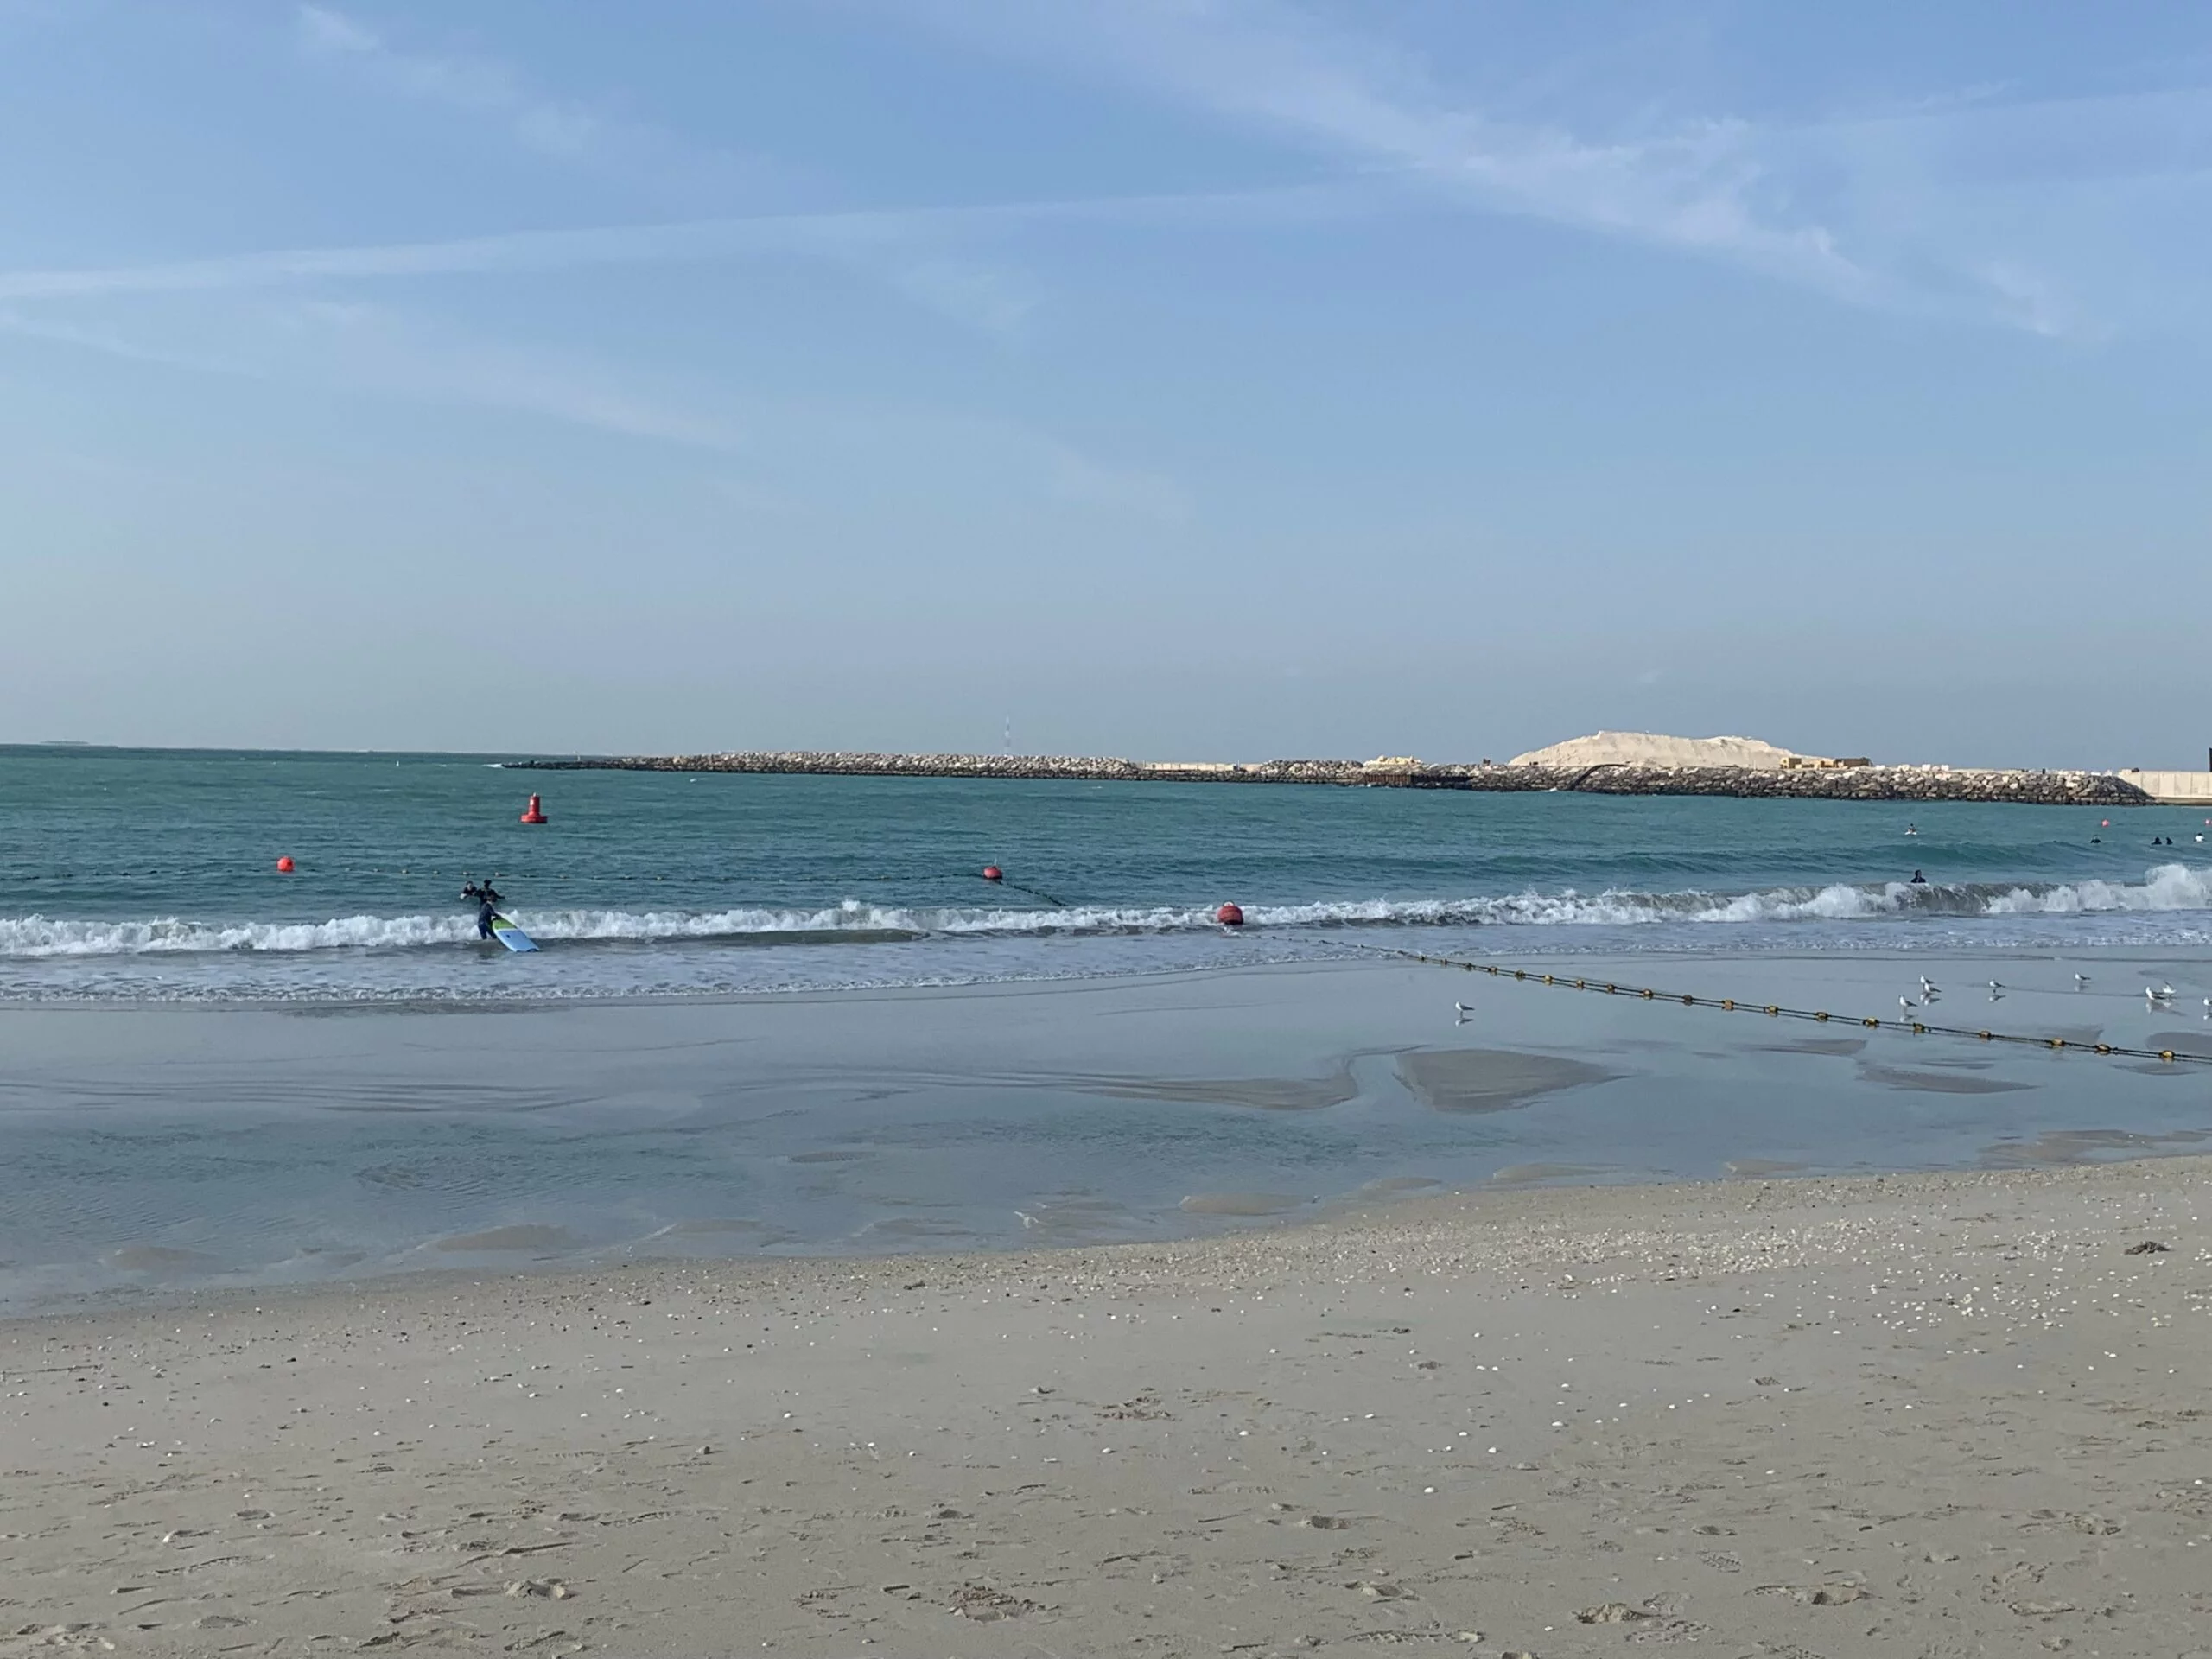 Jumeirah Open Beach - one of free beaches in Dubai